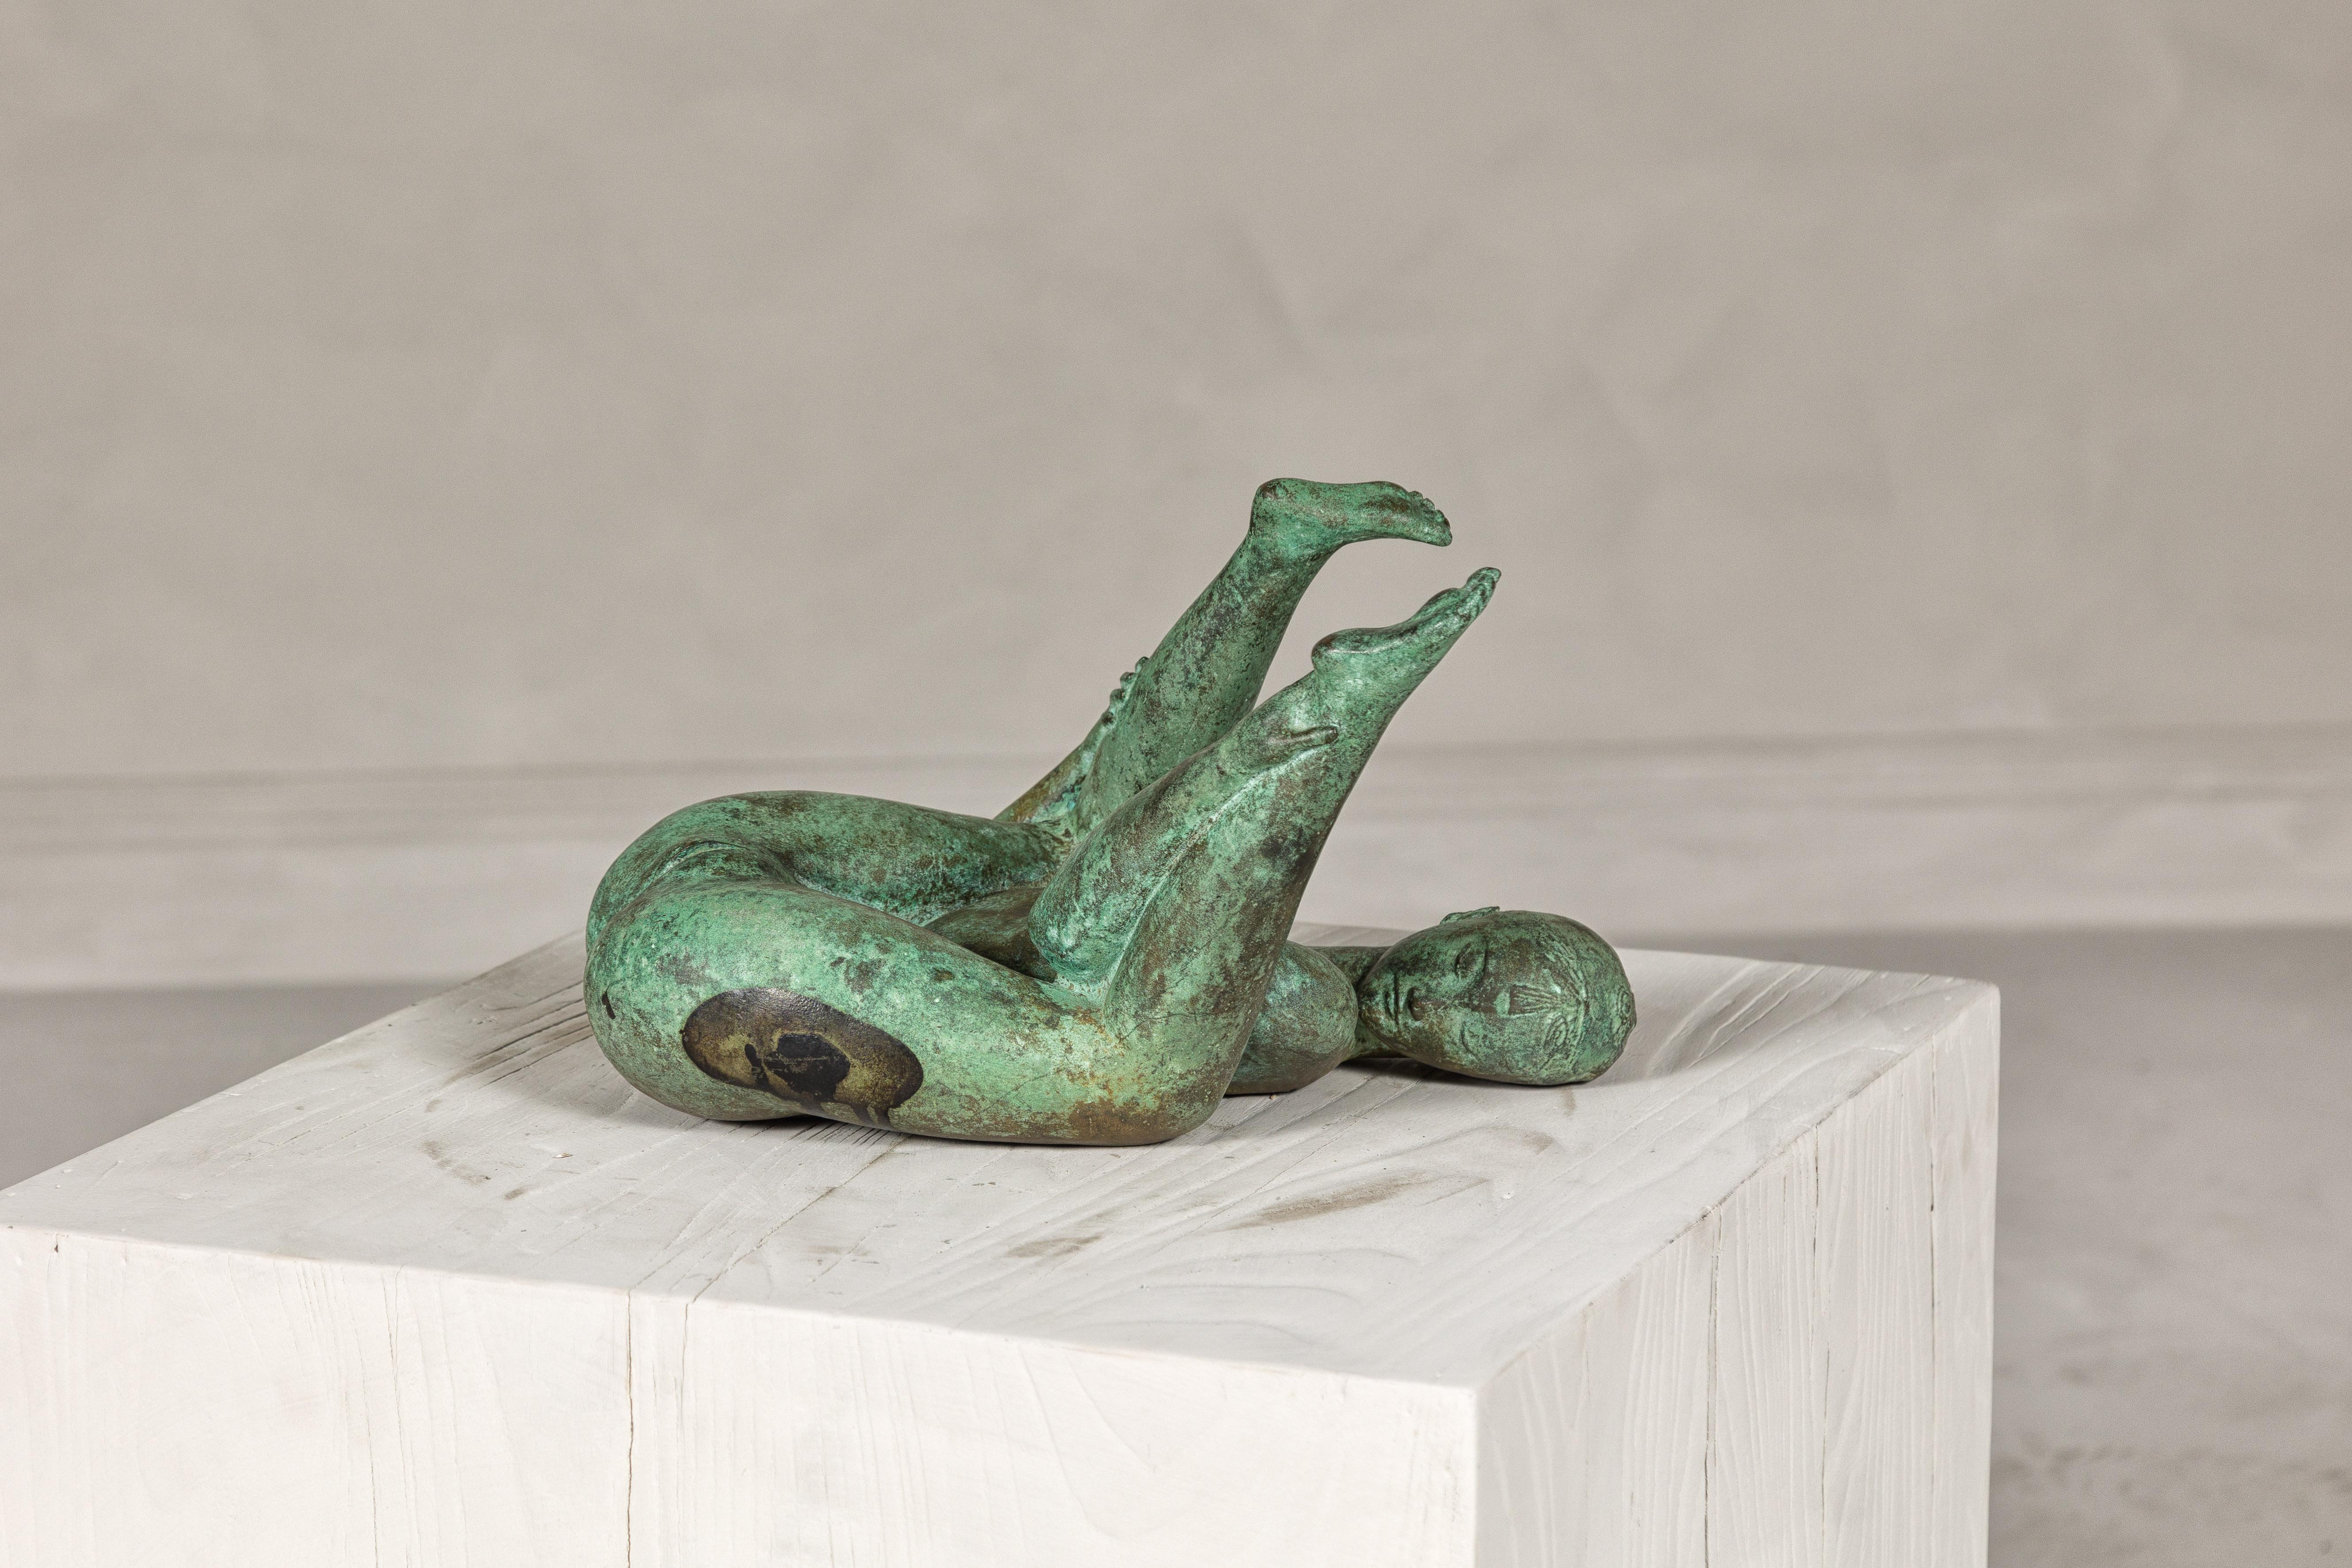 Statuette de table de femme érotique en bronze à patine vert-de-gris. Cette statuette vintage en bronze capture l'allure et la sensualité de la forme féminine, présentée avec un art qui évoque l'élégance d'époques révolues. La statuette est finie